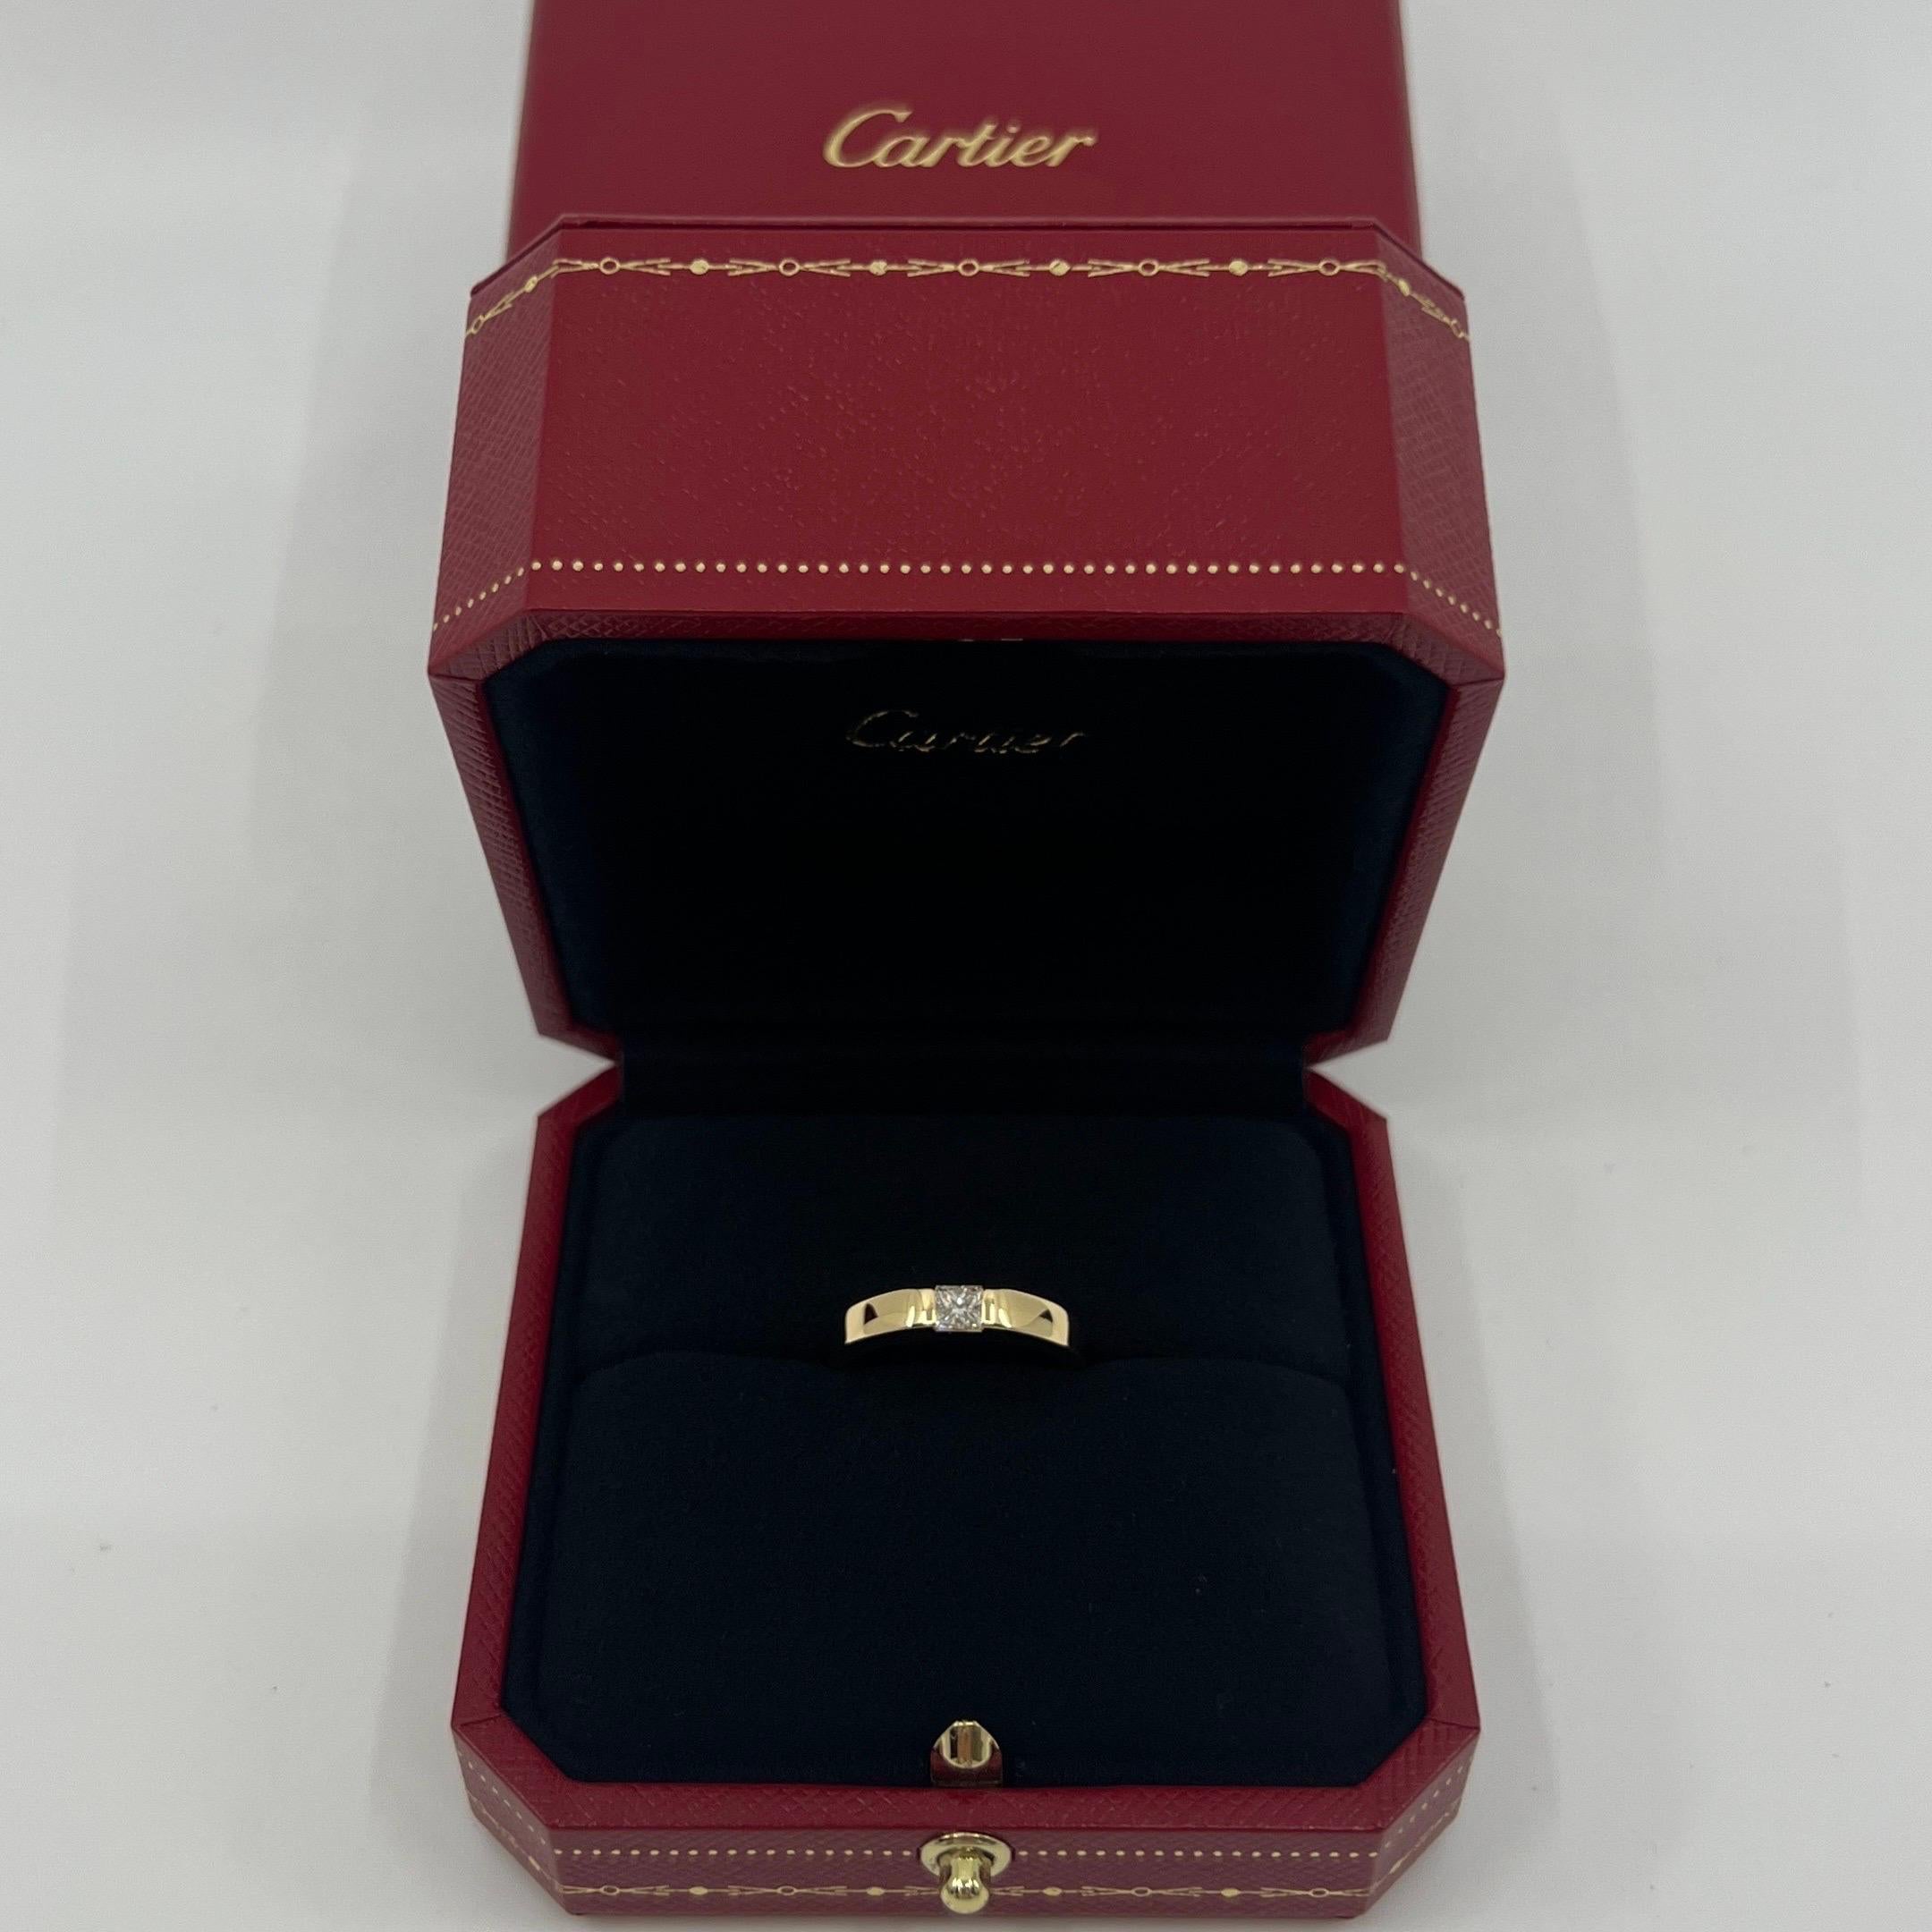 Vintage Cartier Natural Square Princess Cut Diamond 18k Gelbgold Solitär Band Ring.

Atemberaubender Ring aus Gelbgold, besetzt mit einem feinen, quadratischen Diamanten im Prinzessinnenschliff von 0,25 Karat. Ungefähr. Farbe E/F, Reinheit VVS,